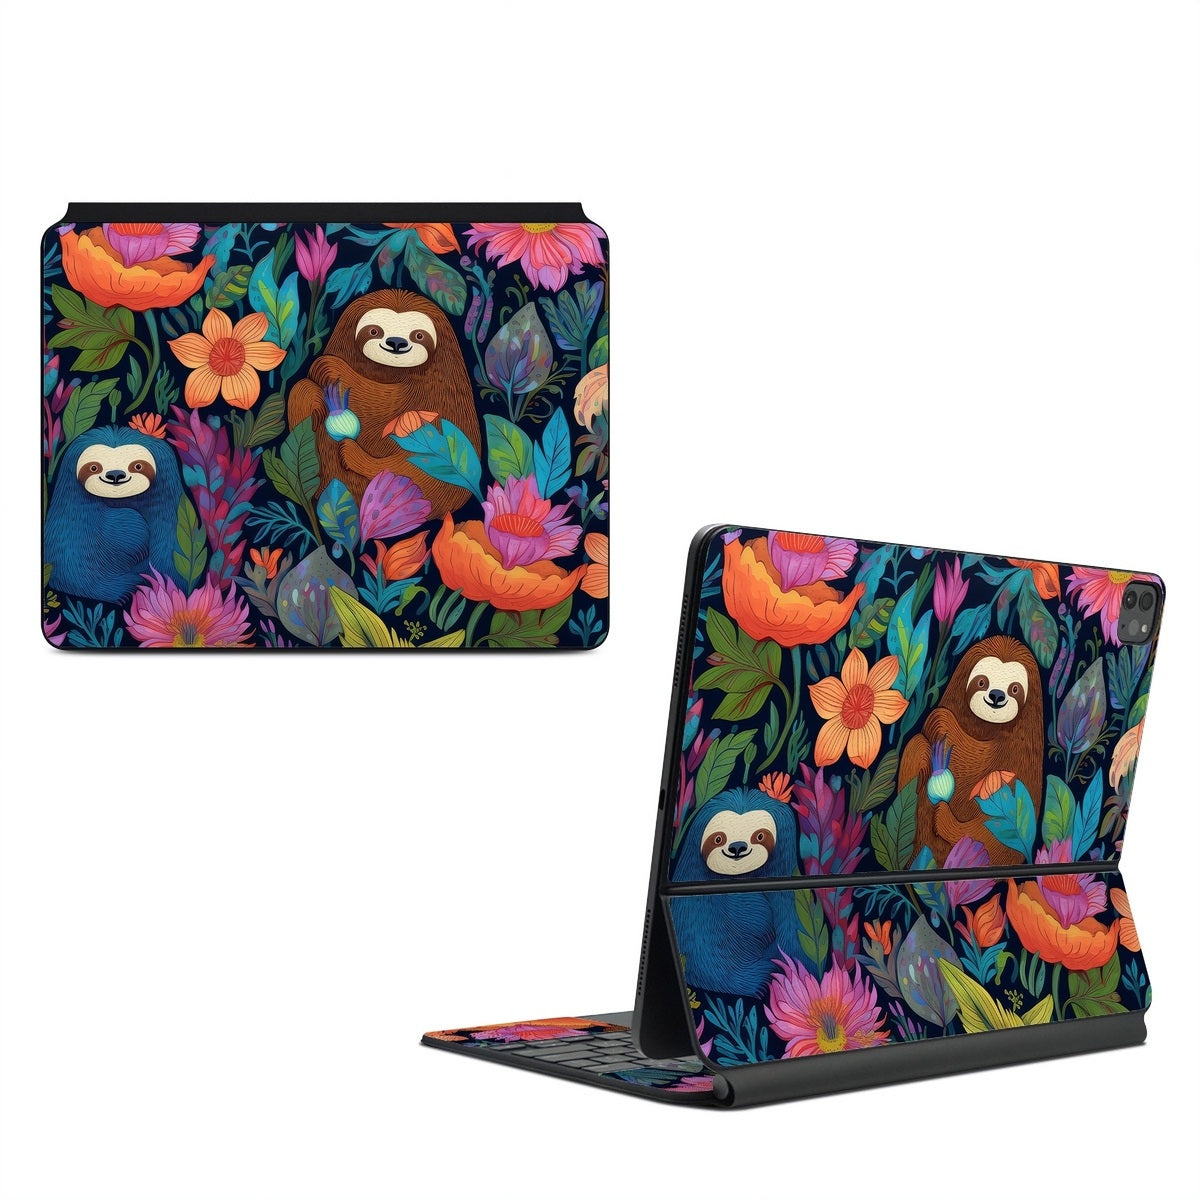 Garden of Slothy Delights - Apple Magic Keyboard for iPad Skin